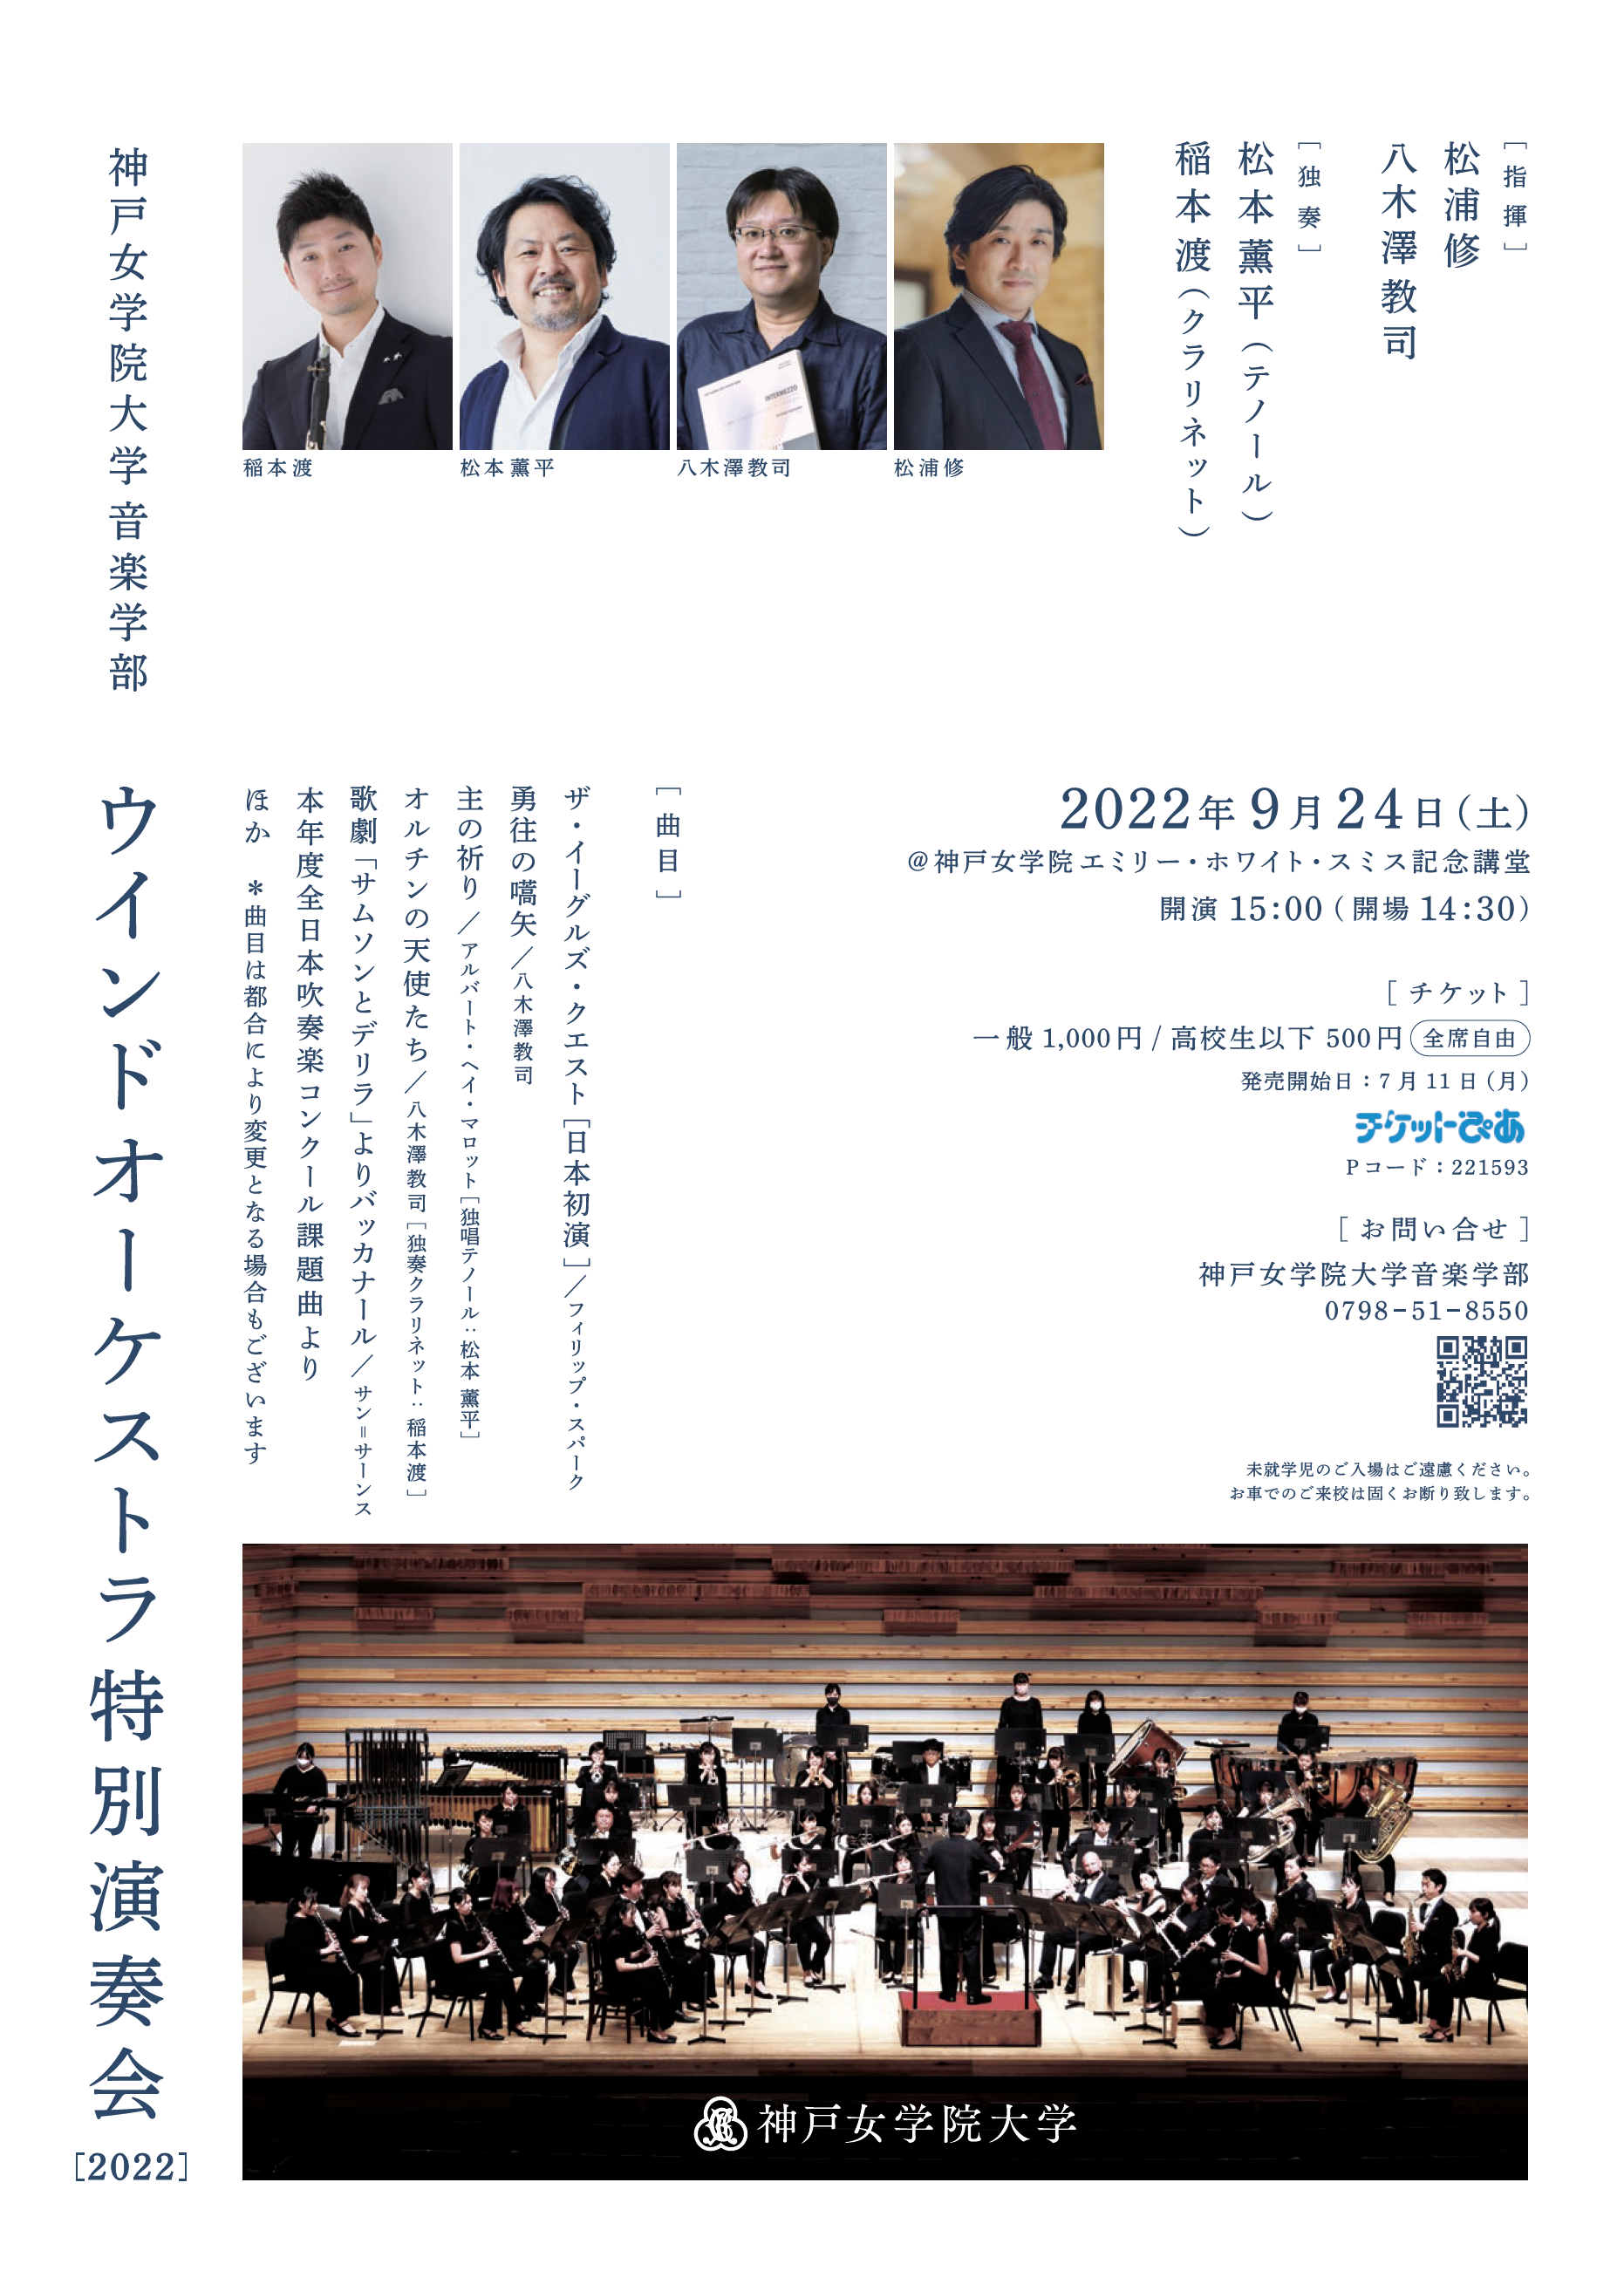 魅力的な 神戸女学院大学音楽学部ウインドオーケストラ 神戸女学院大学音楽学部ウインドo.